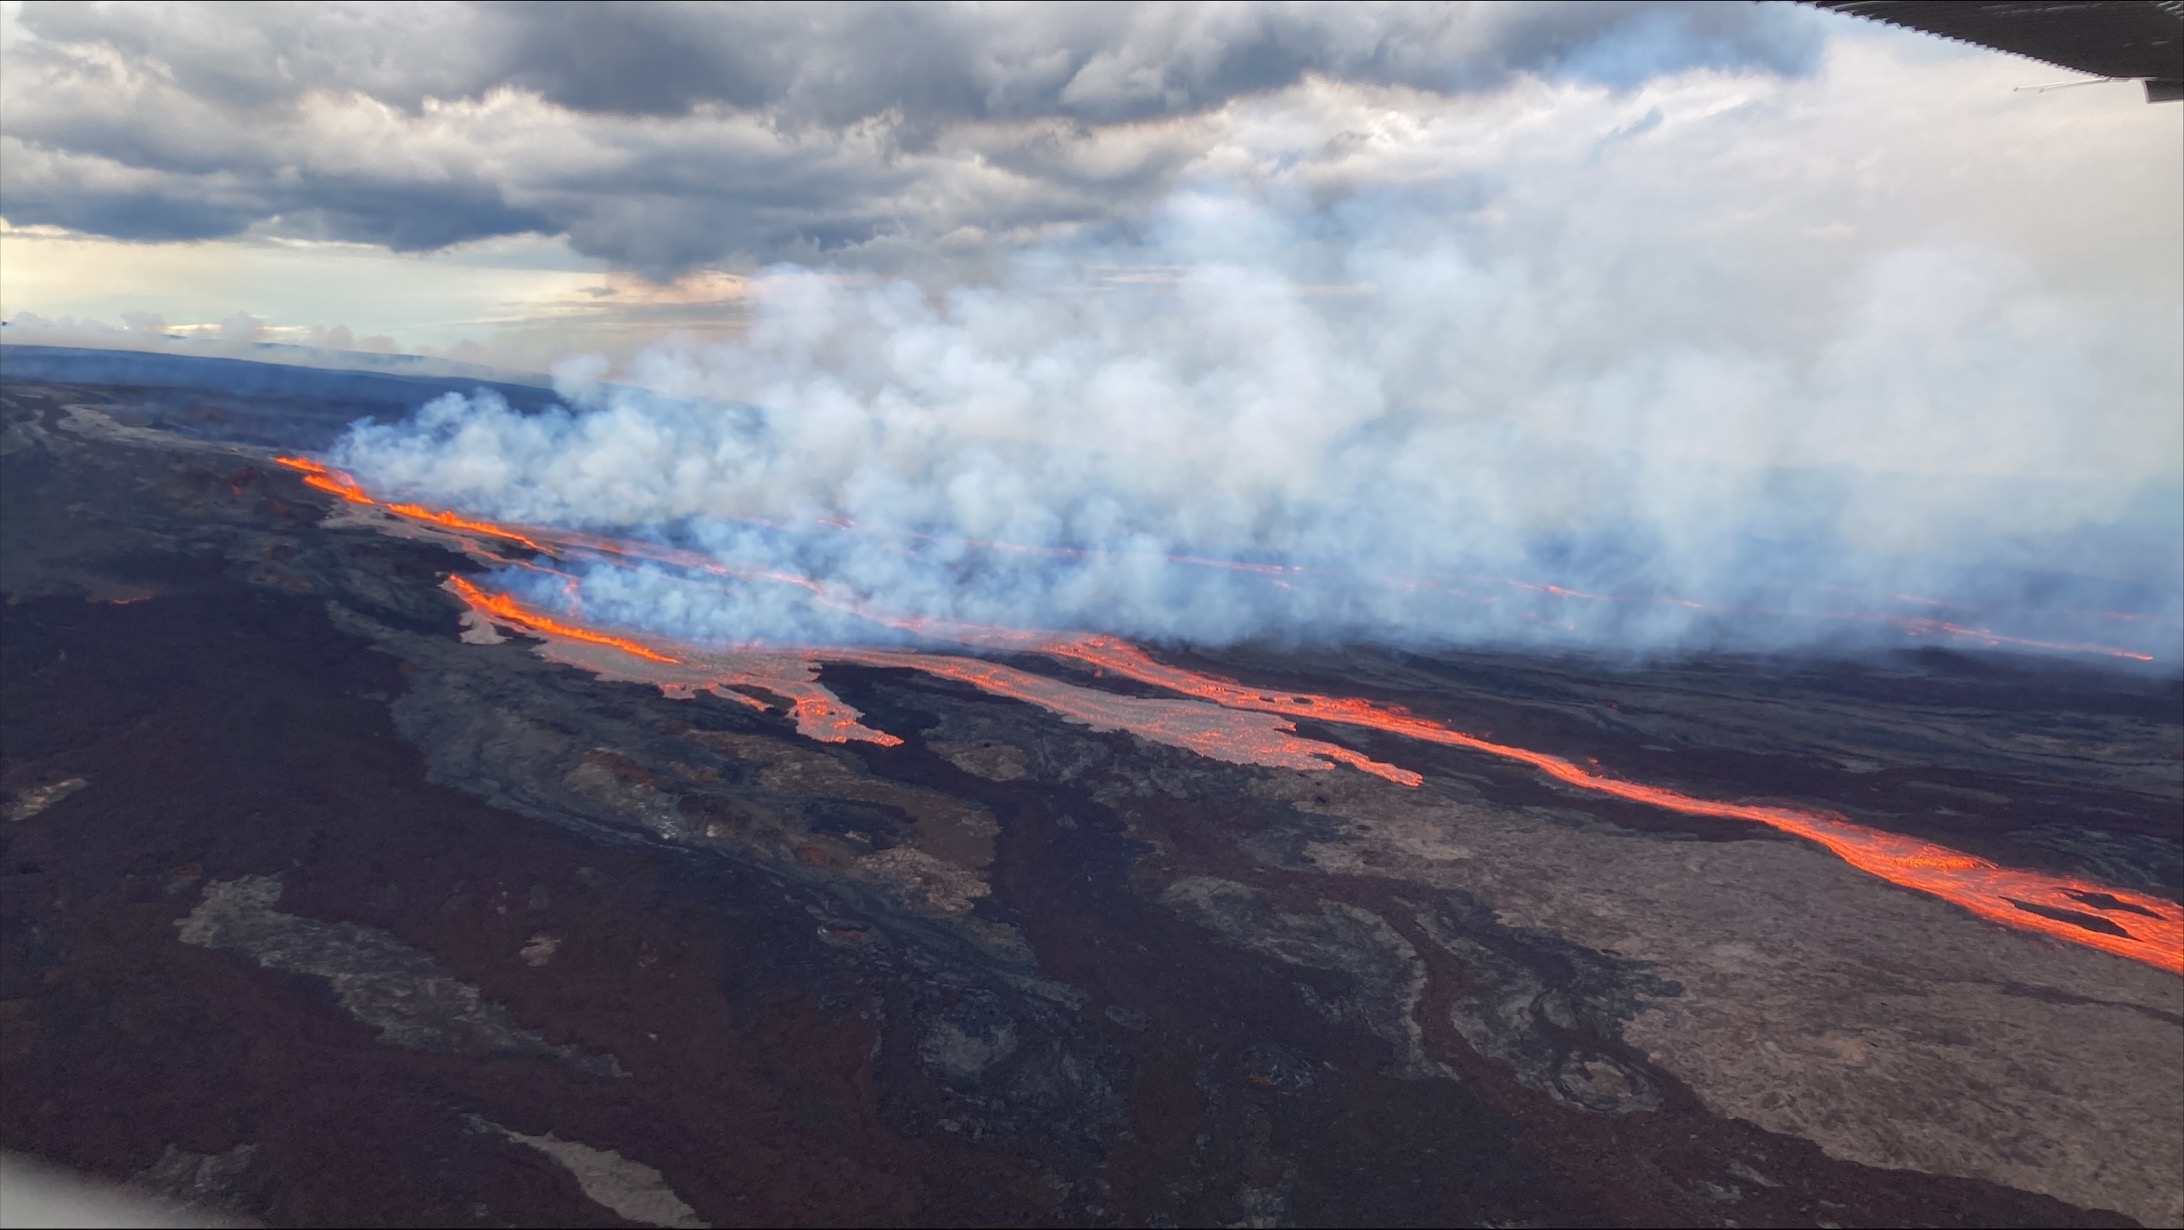 Mauna Loa volcano is putting on a fiery, striking show